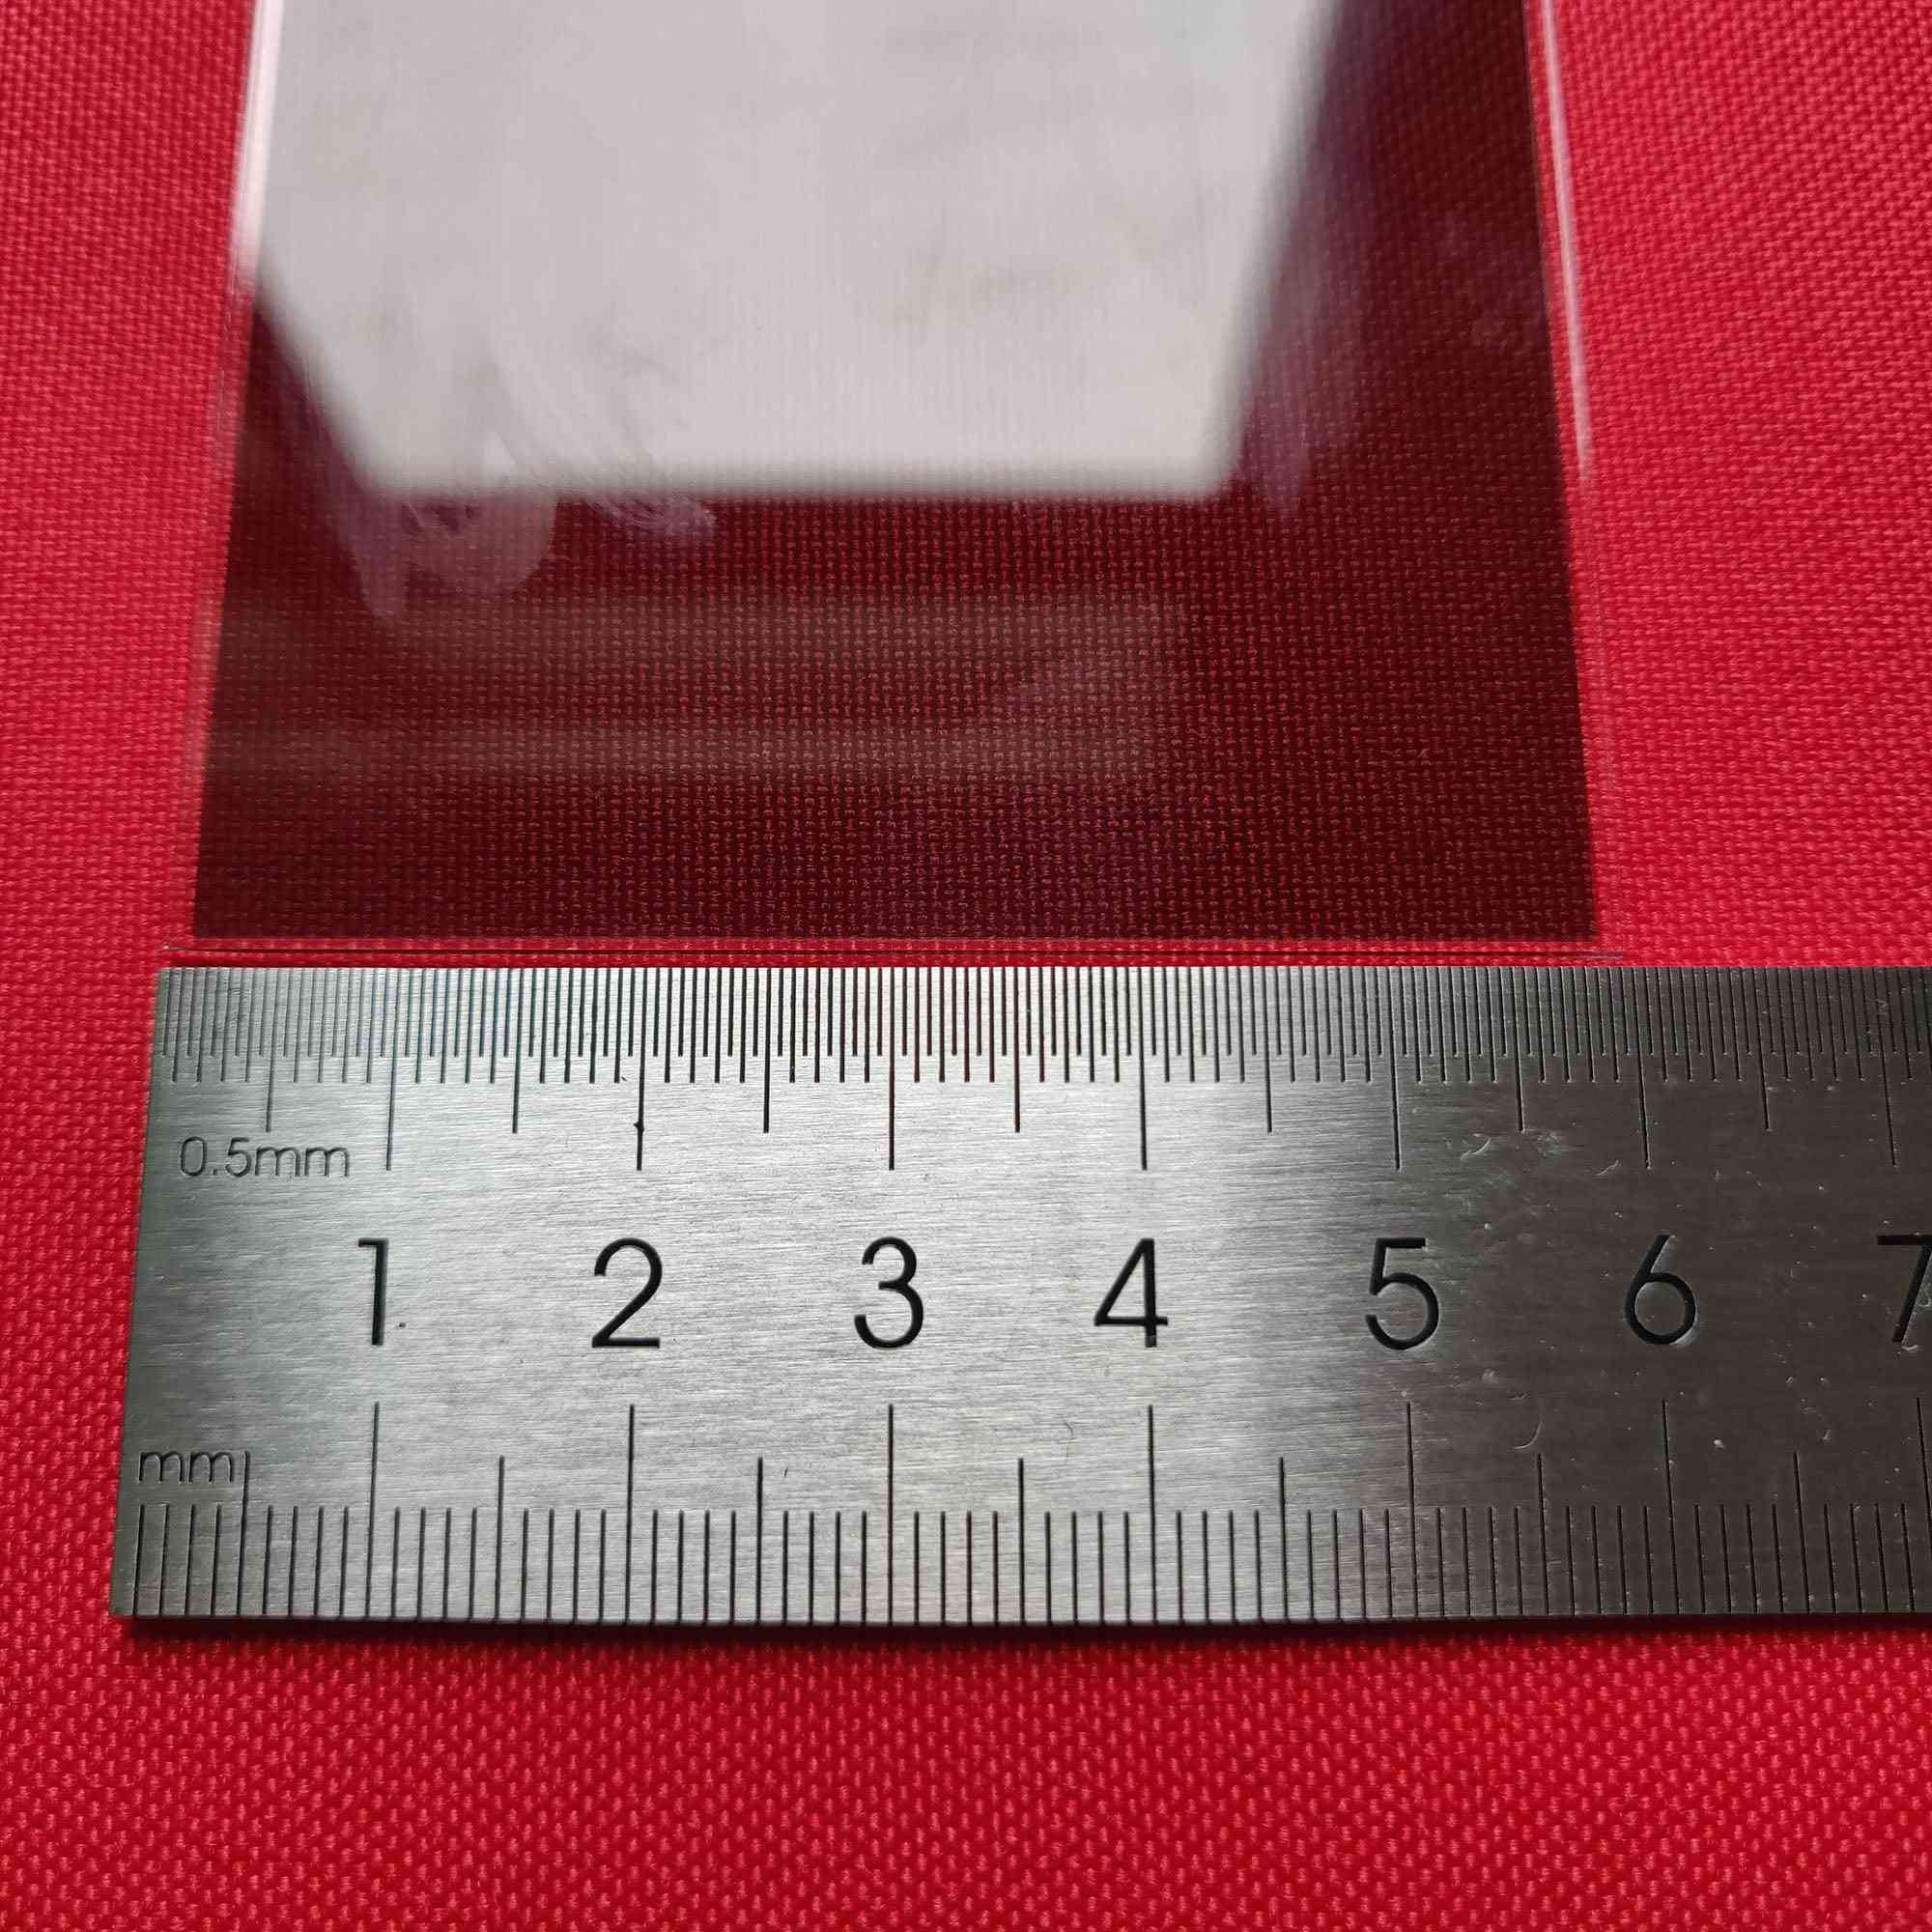 Sticlă polarizantă de izolare termică, 1,2 mm pentru proiector LCD cu 4 inci mini led, piesă de reparație pentru unic uc40 / uc46 rigal